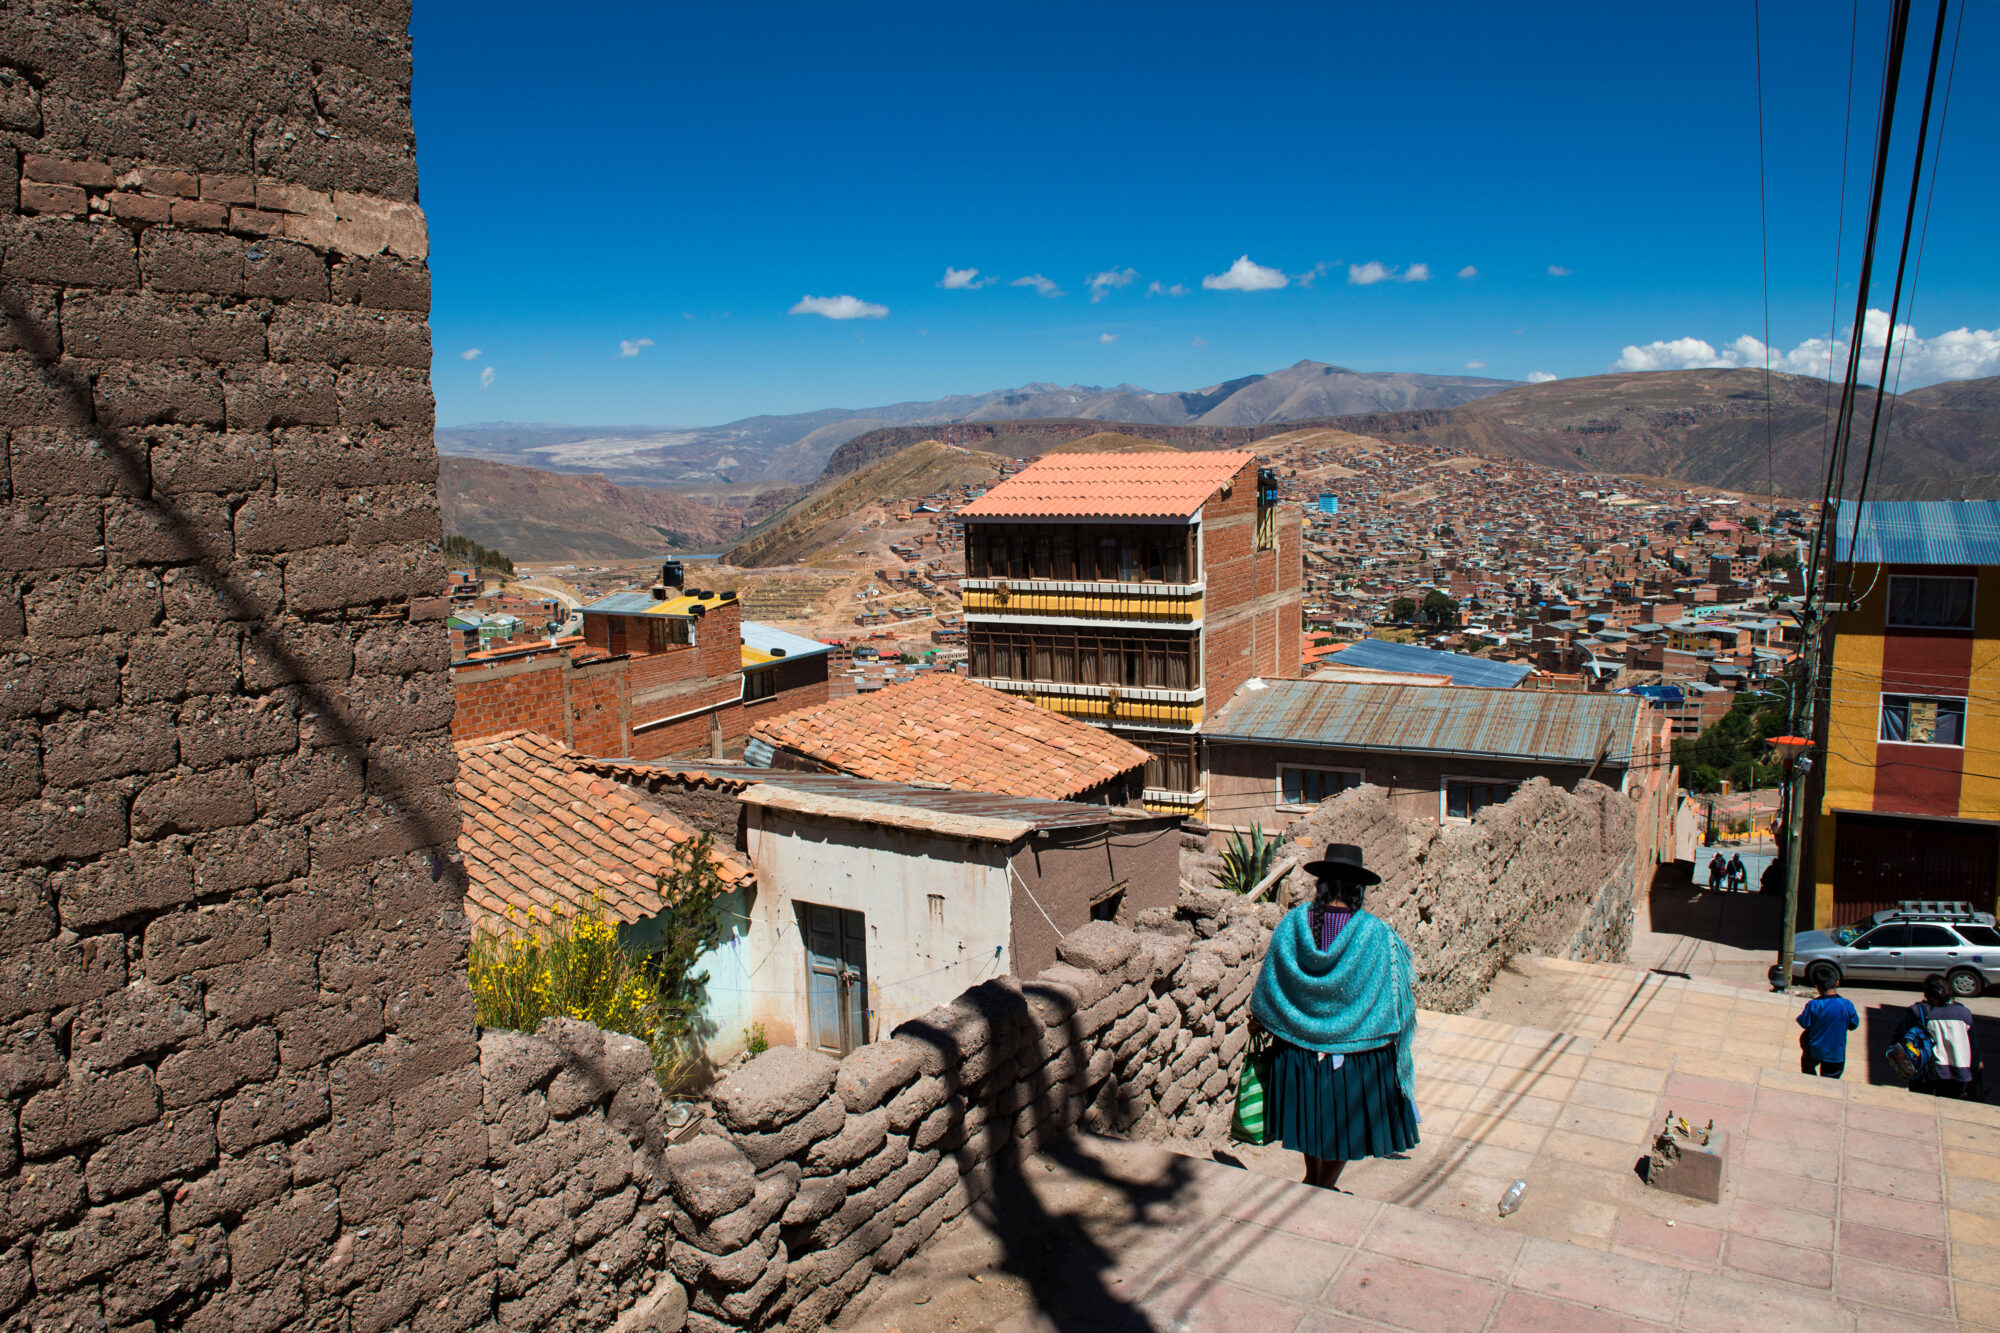 <p>Moradores da cidade de Potosí e Cochabamba se queixam da falta de interconectividade com demais regiões da Bolívia (Imagem: Tiago Fernandez / Alamy)</p>